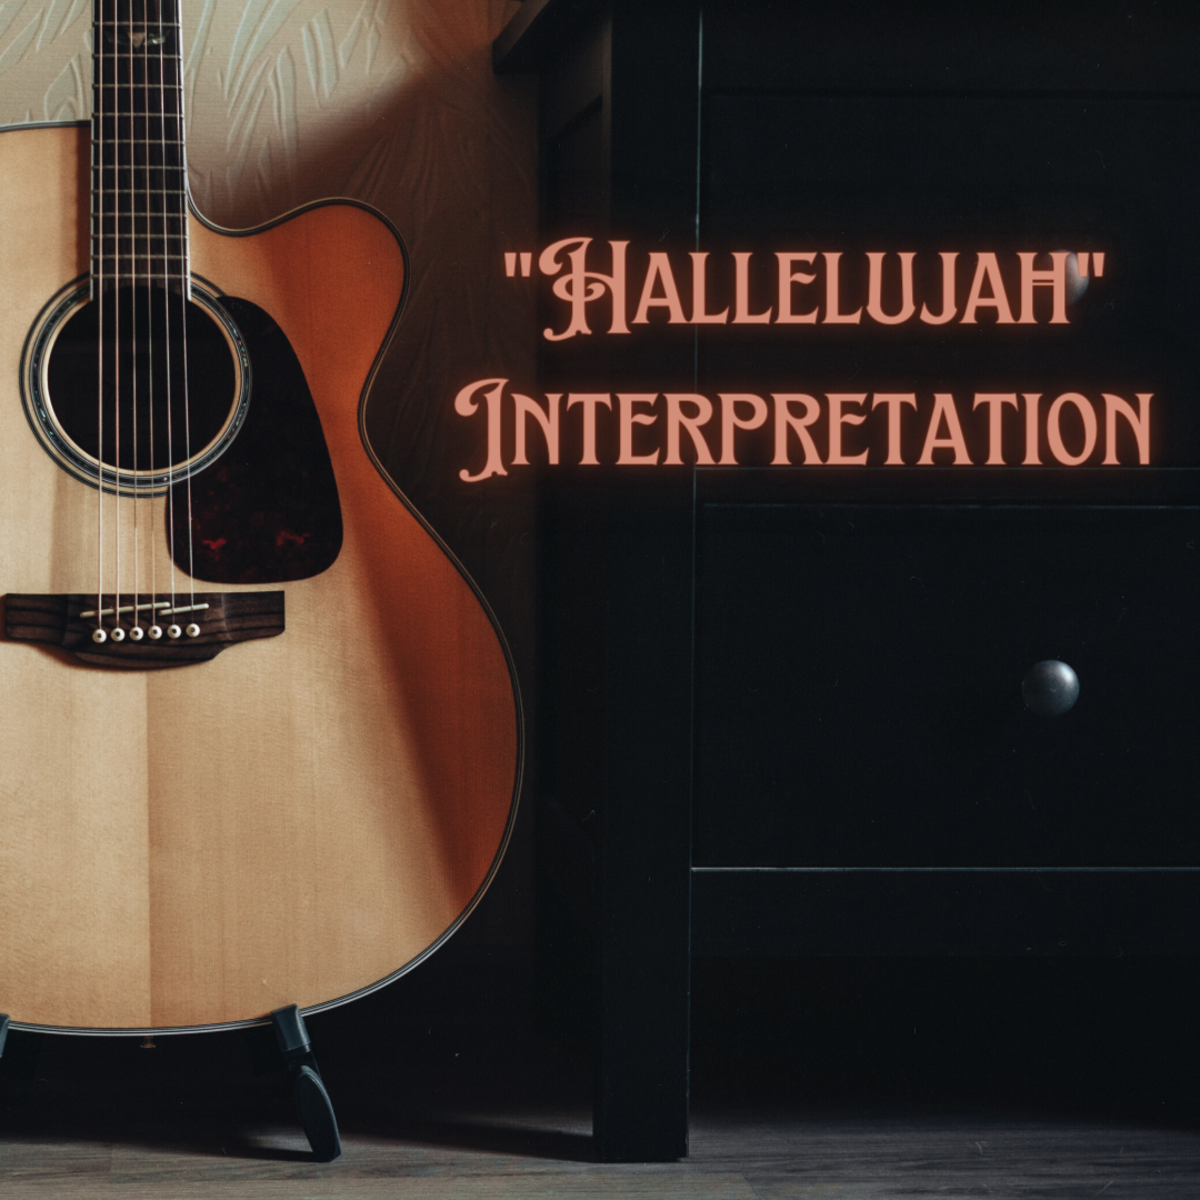 An interpretation of the Leonard Cohen song "Hallelujah"